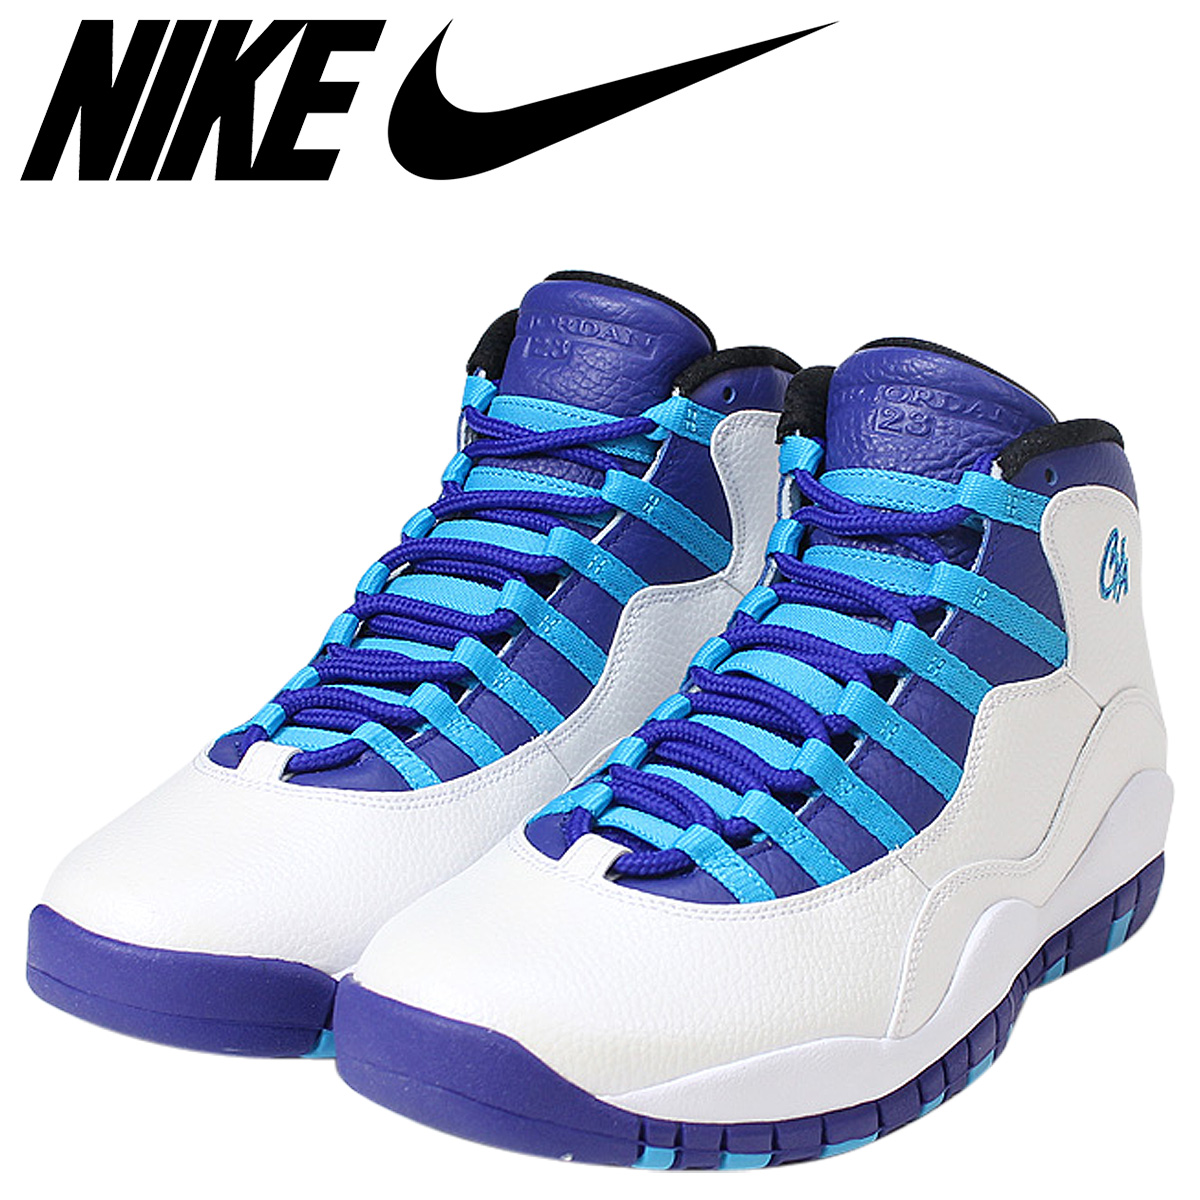 Sugar Online Shop: NIKE Nike Air Jordan 10 nostalgic sneakers AIR 